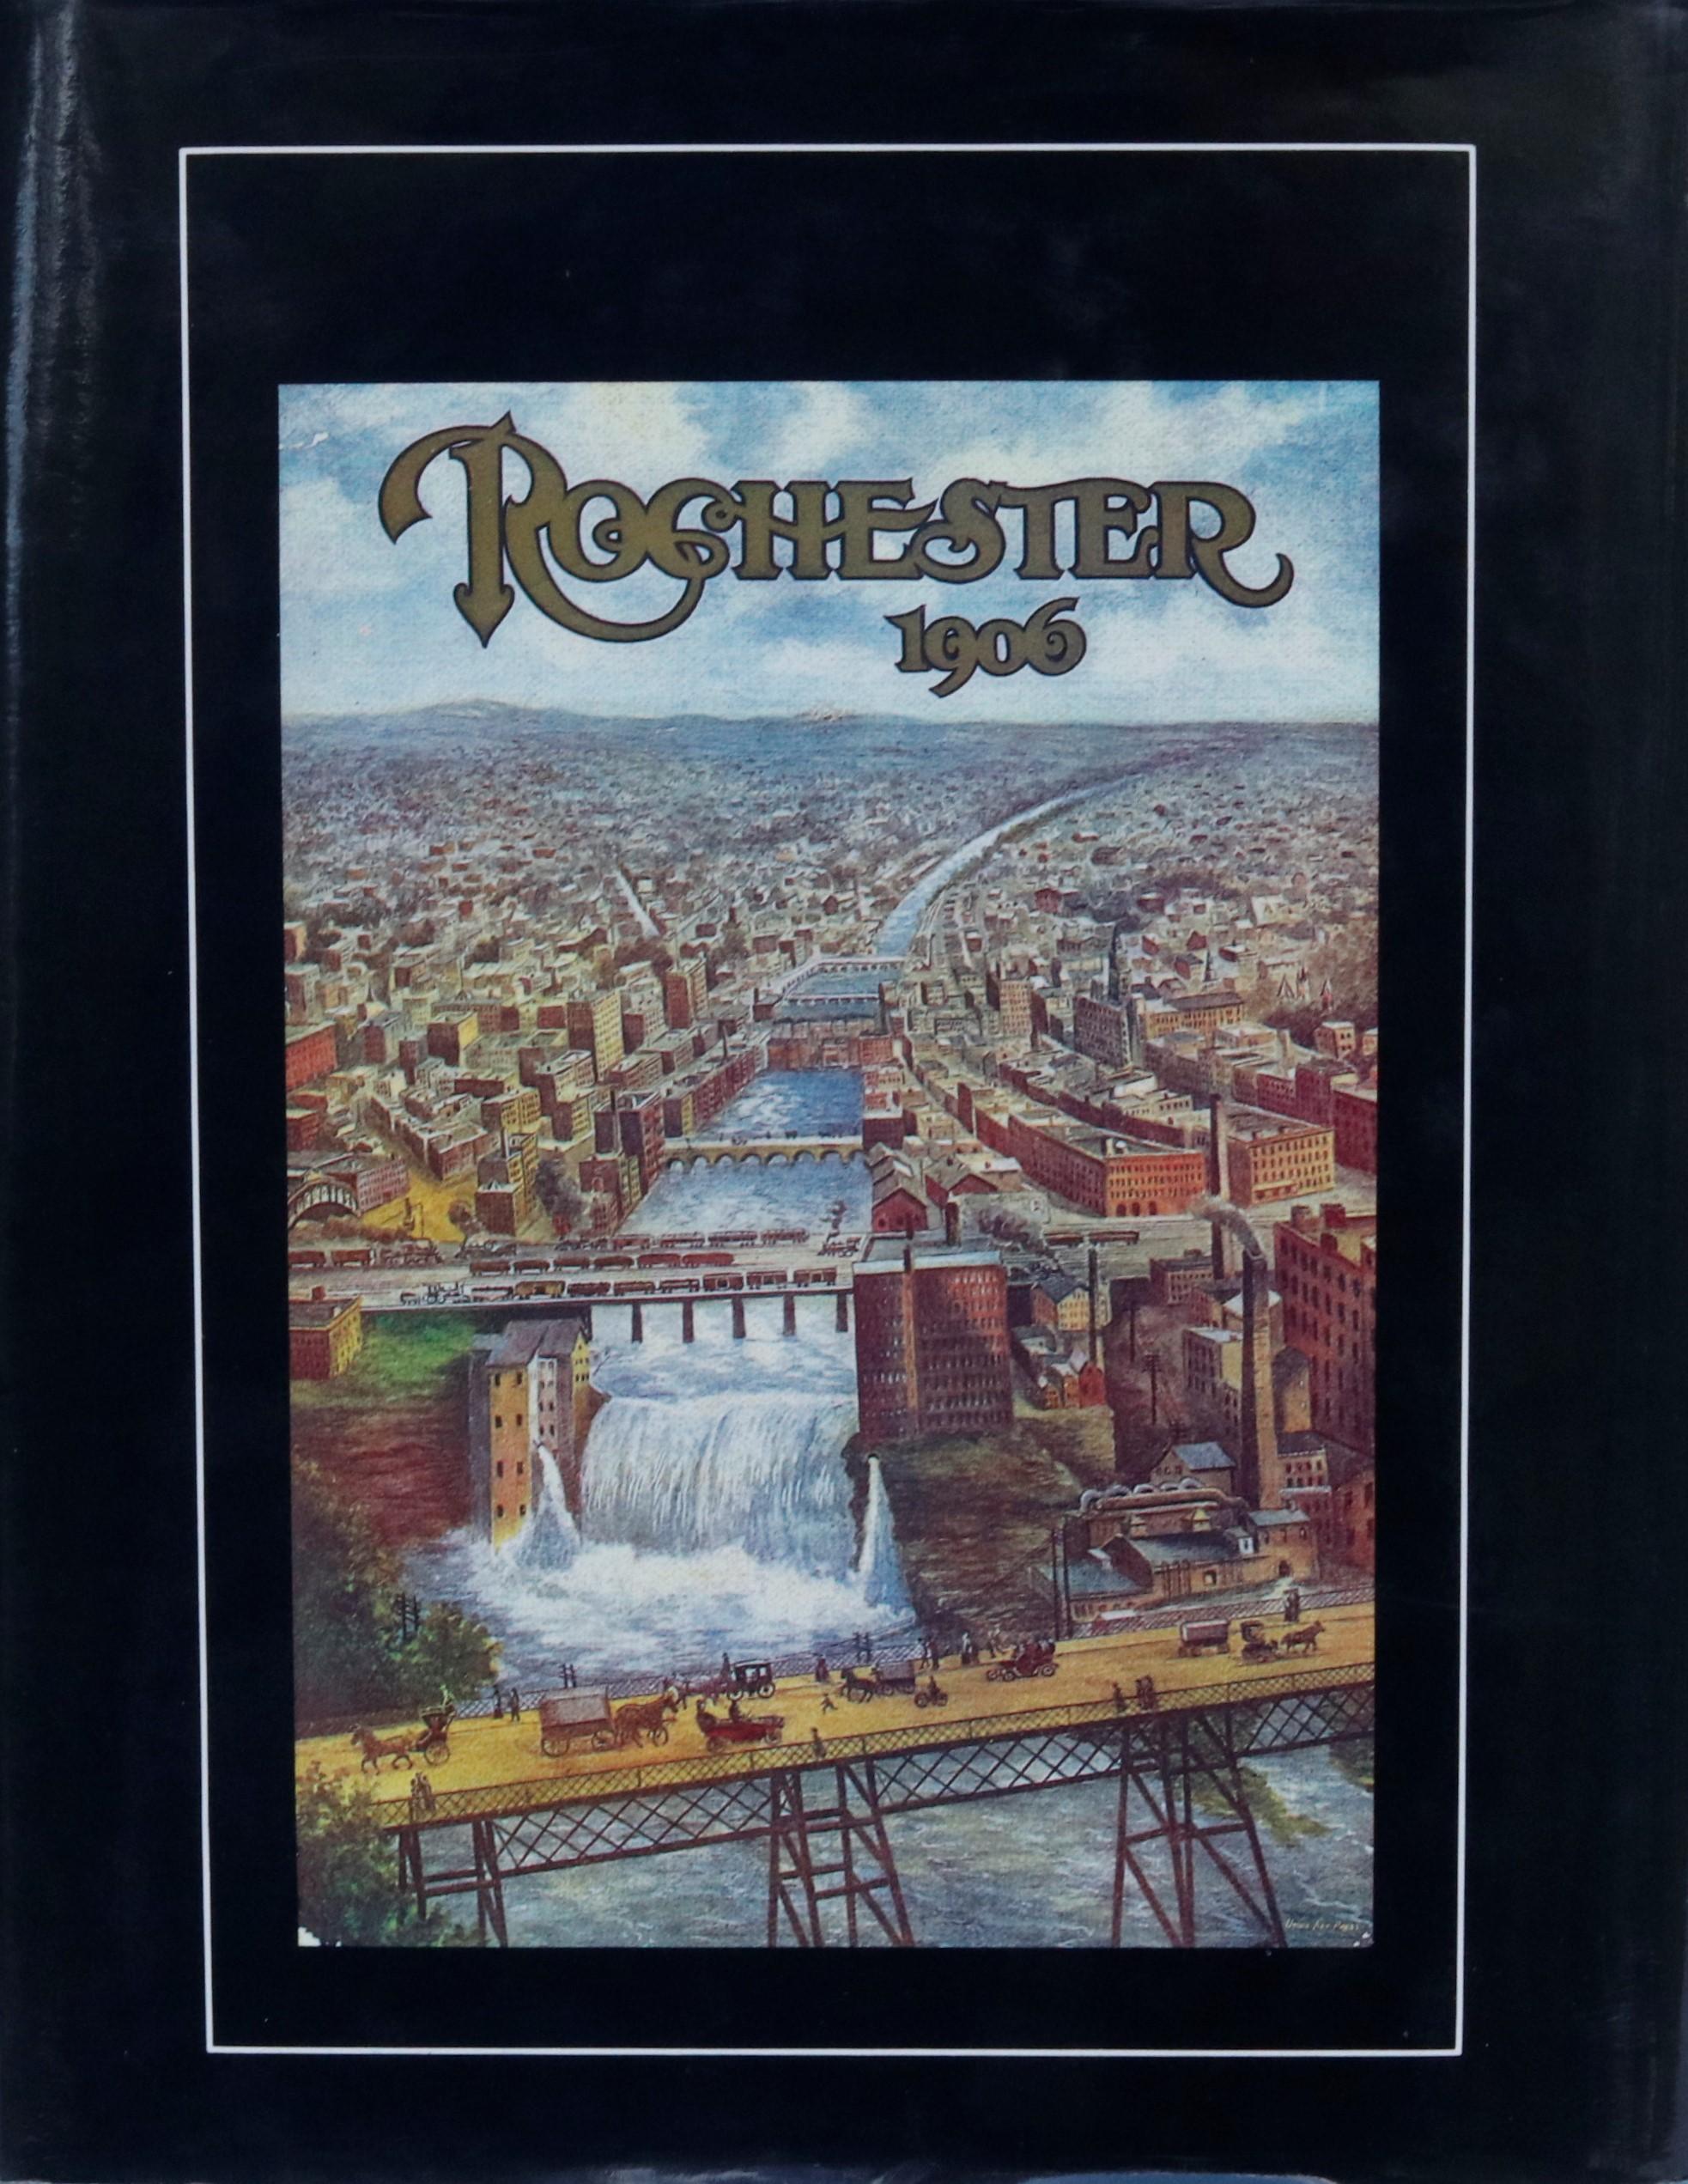 Rochester, une histoire en images par Ruth Rosenberg-Naparsteck. Publié par The Donning Company of Norfolk/Virginia Beach en 1994. Couverture rigide avec jaquette, 192 pages.